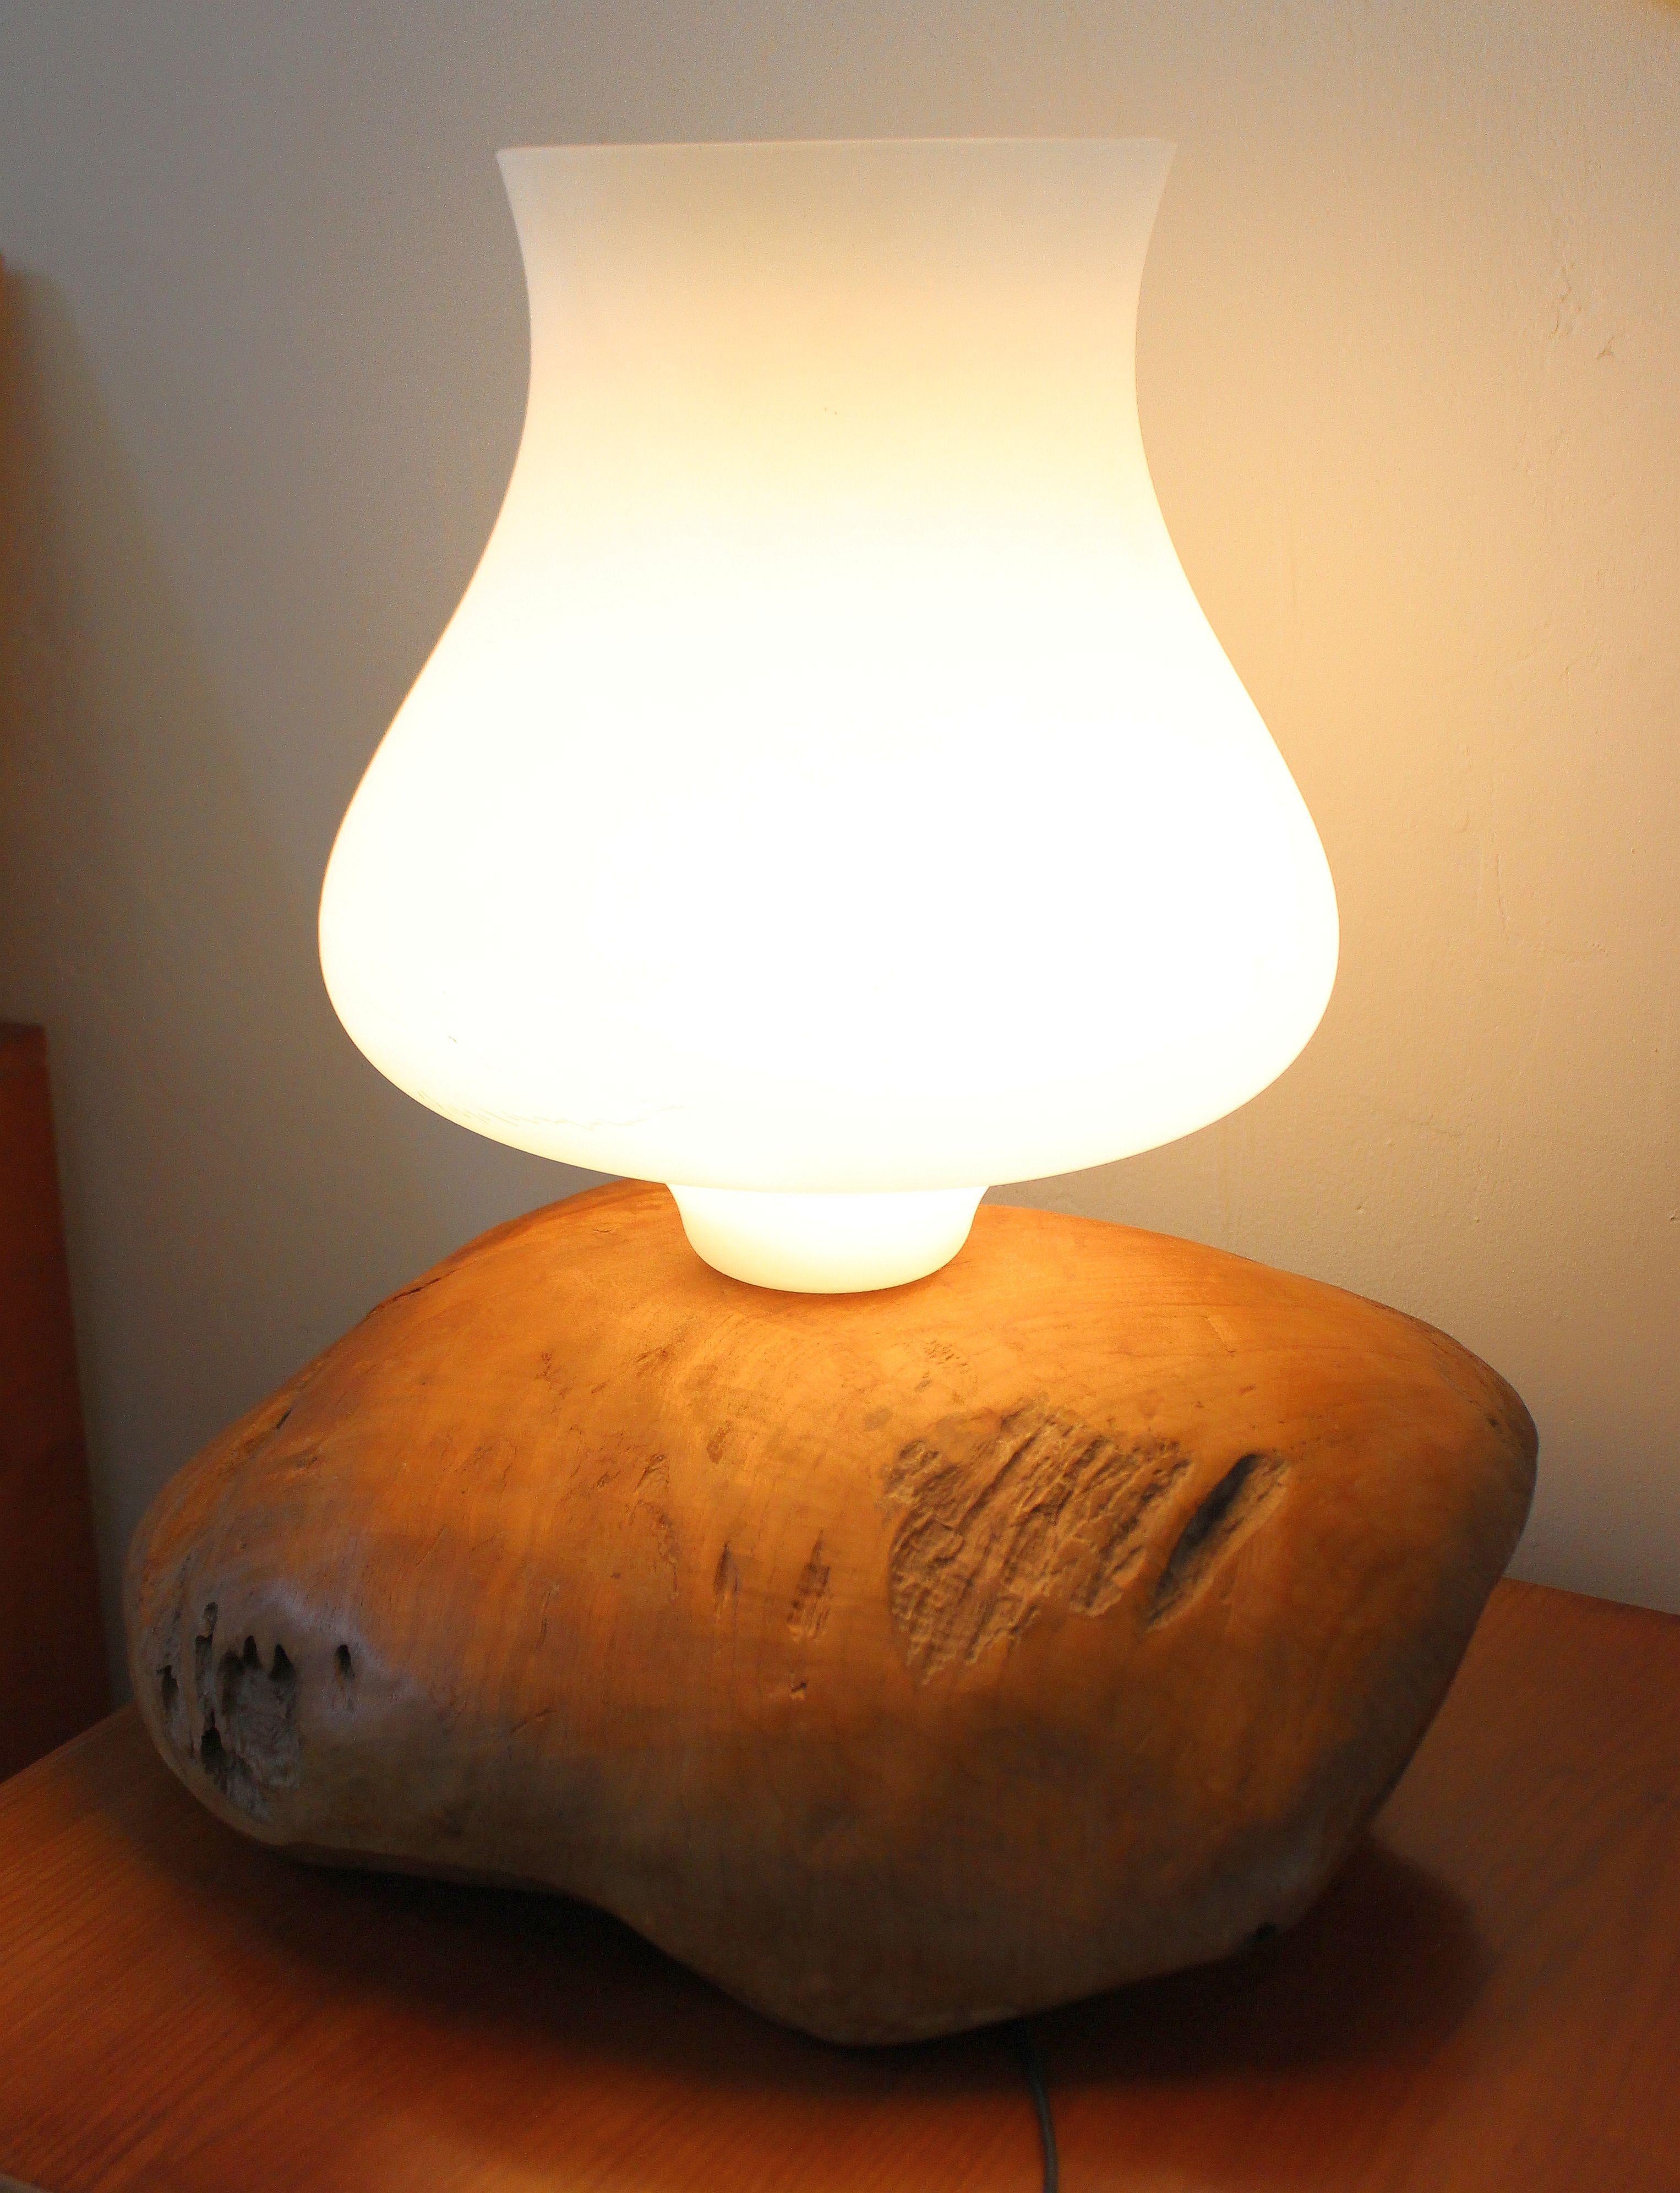 Lampe de table italienne de l'artiste Gimo Fero Venation, qui pourrait être un lampadaire en raison de la taille des luminaires. La base de la lampe de table provient d'arbres tombés il y a longtemps, et peut-être d'un olivier. Abat-jour en verre